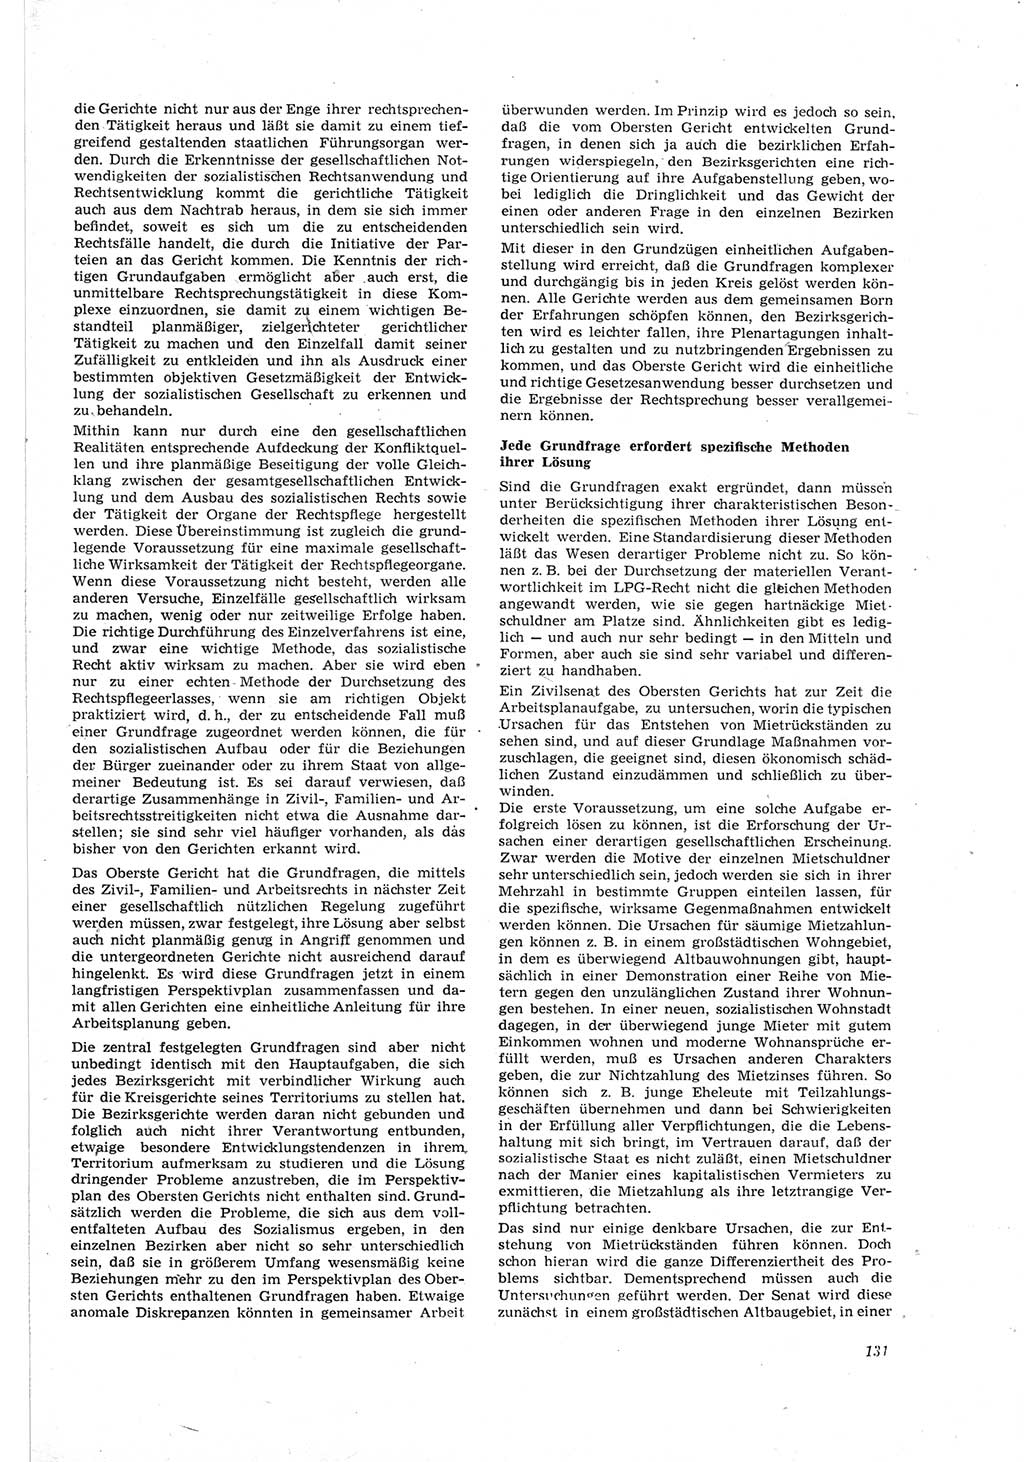 Neue Justiz (NJ), Zeitschrift für Recht und Rechtswissenschaft [Deutsche Demokratische Republik (DDR)], 18. Jahrgang 1964, Seite 131 (NJ DDR 1964, S. 131)